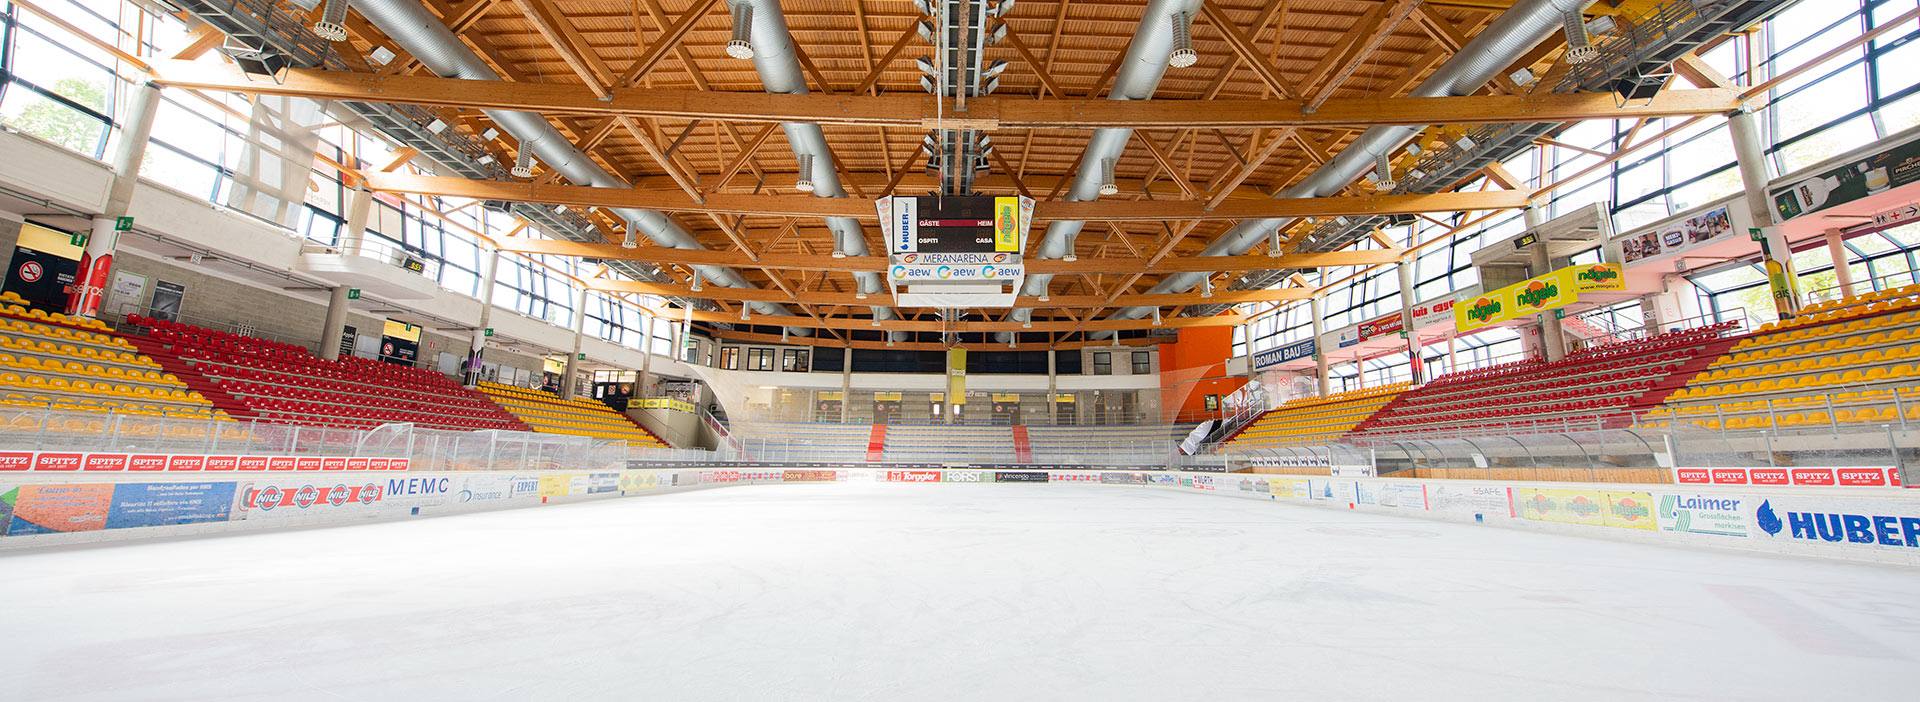 Eissporthalle Meranarena